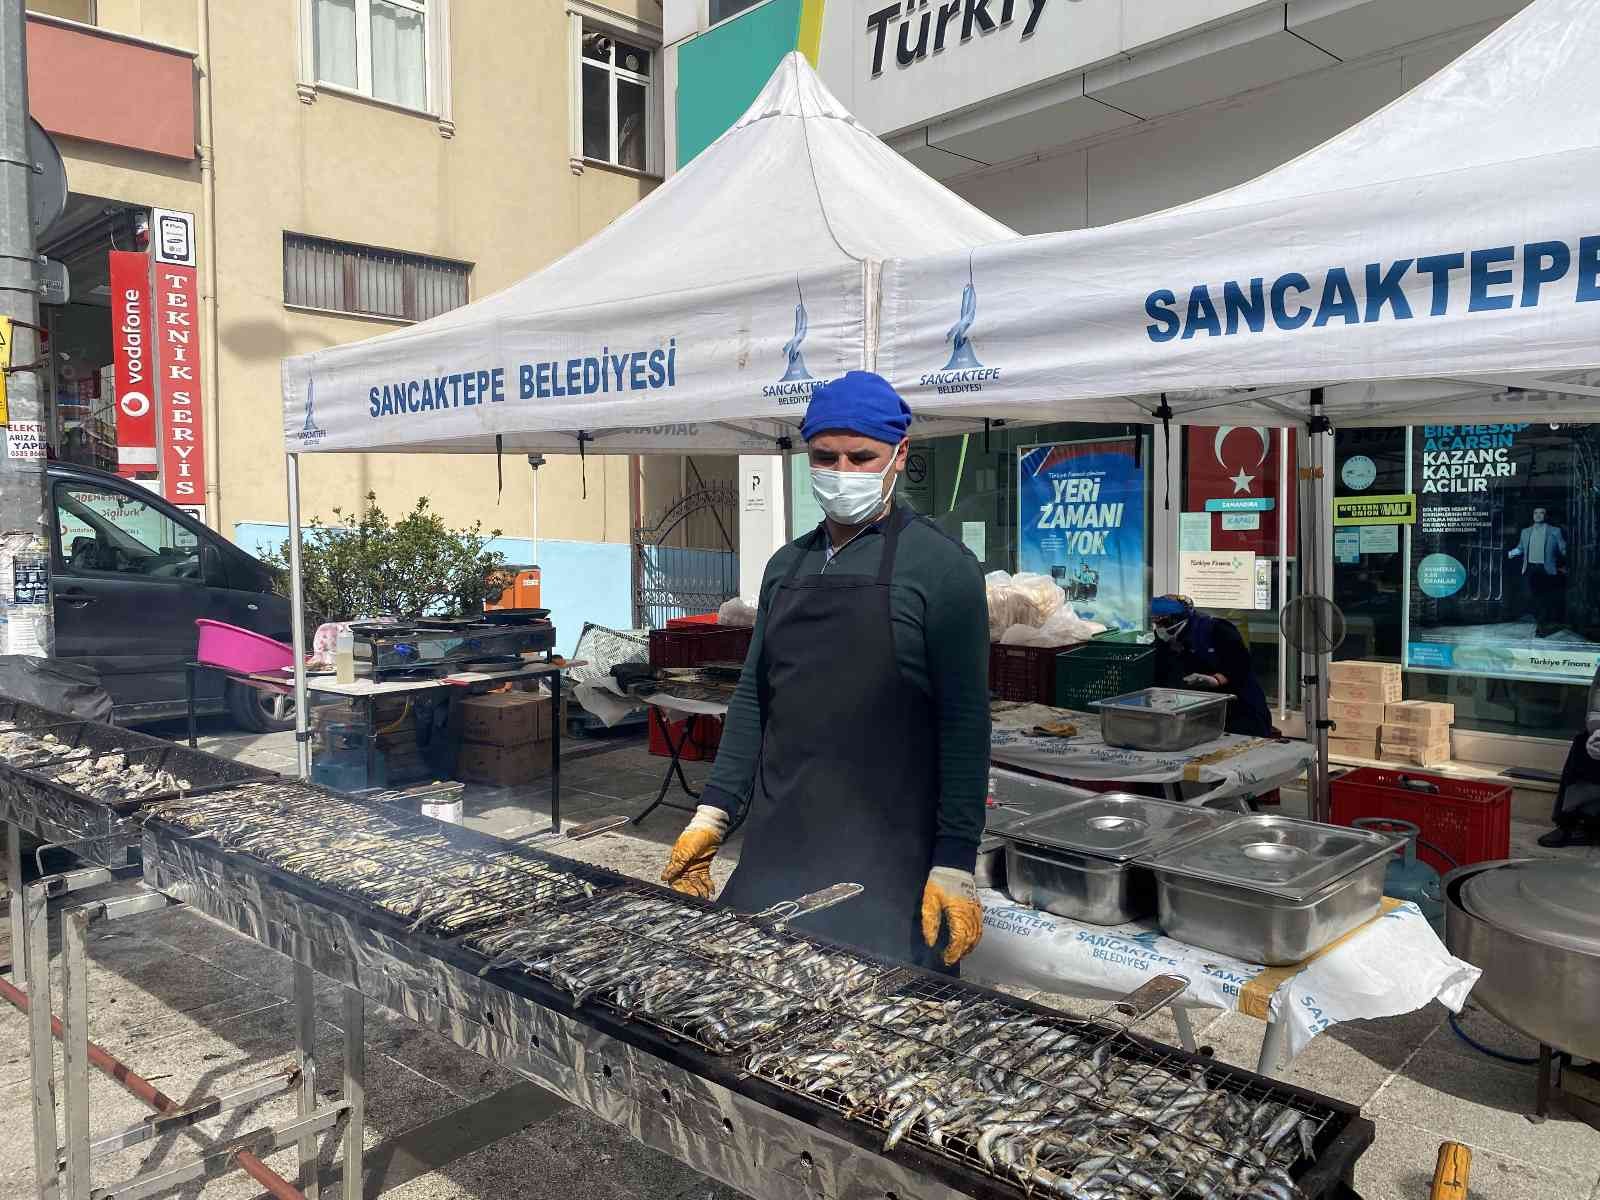 Sancaktepe’de festivalde 7 ton hamsi dağıtıldı #istanbul